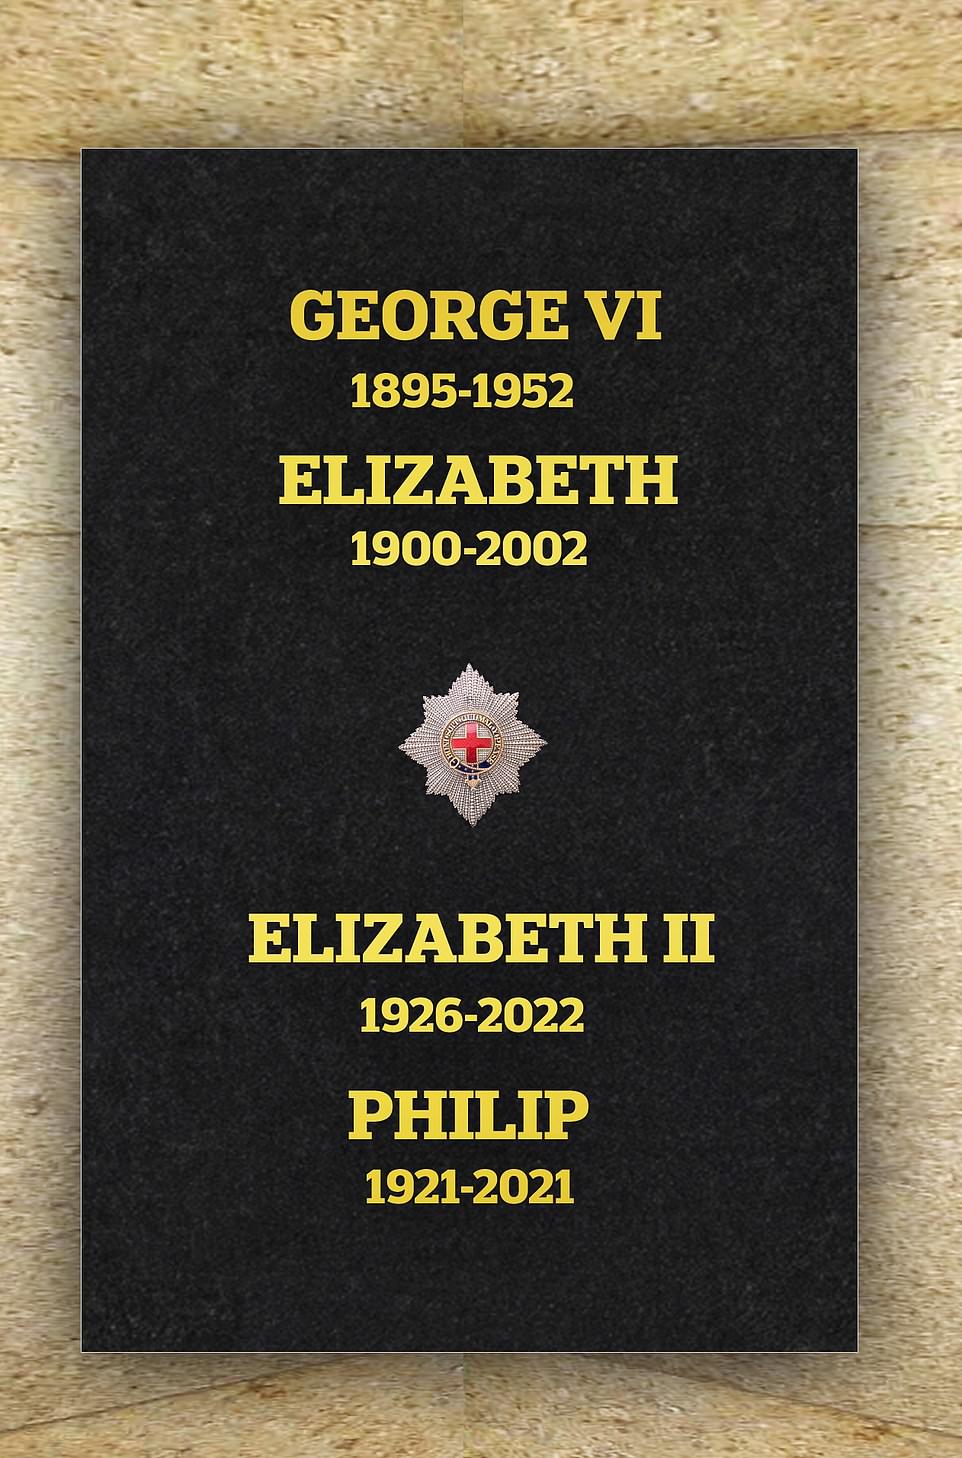 Eine Steinplatte mit den Namen von Königin Elizabeth II., ihrem verstorbenen Ehemann Prinz Philip und ihren Eltern König George VI. und Königin Elizabeth wurde in der St. George's Chapel in Windsor installiert